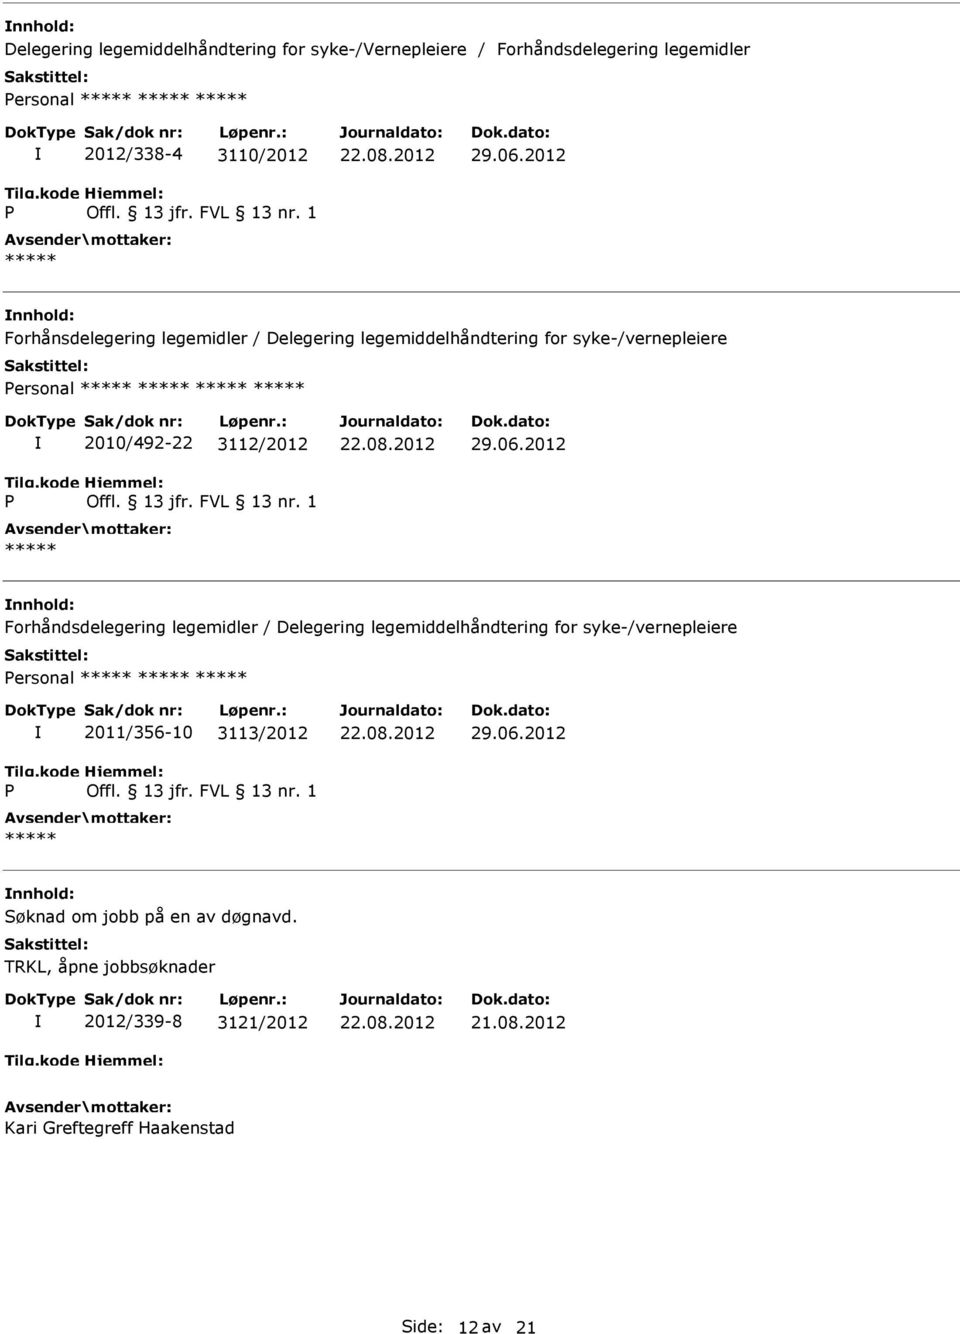 06.2012 Forhåndsdelegering legemidler / Delegering legemiddelhåndtering for syke-/vernepleiere ersonal 2011/356-10 3113/2012